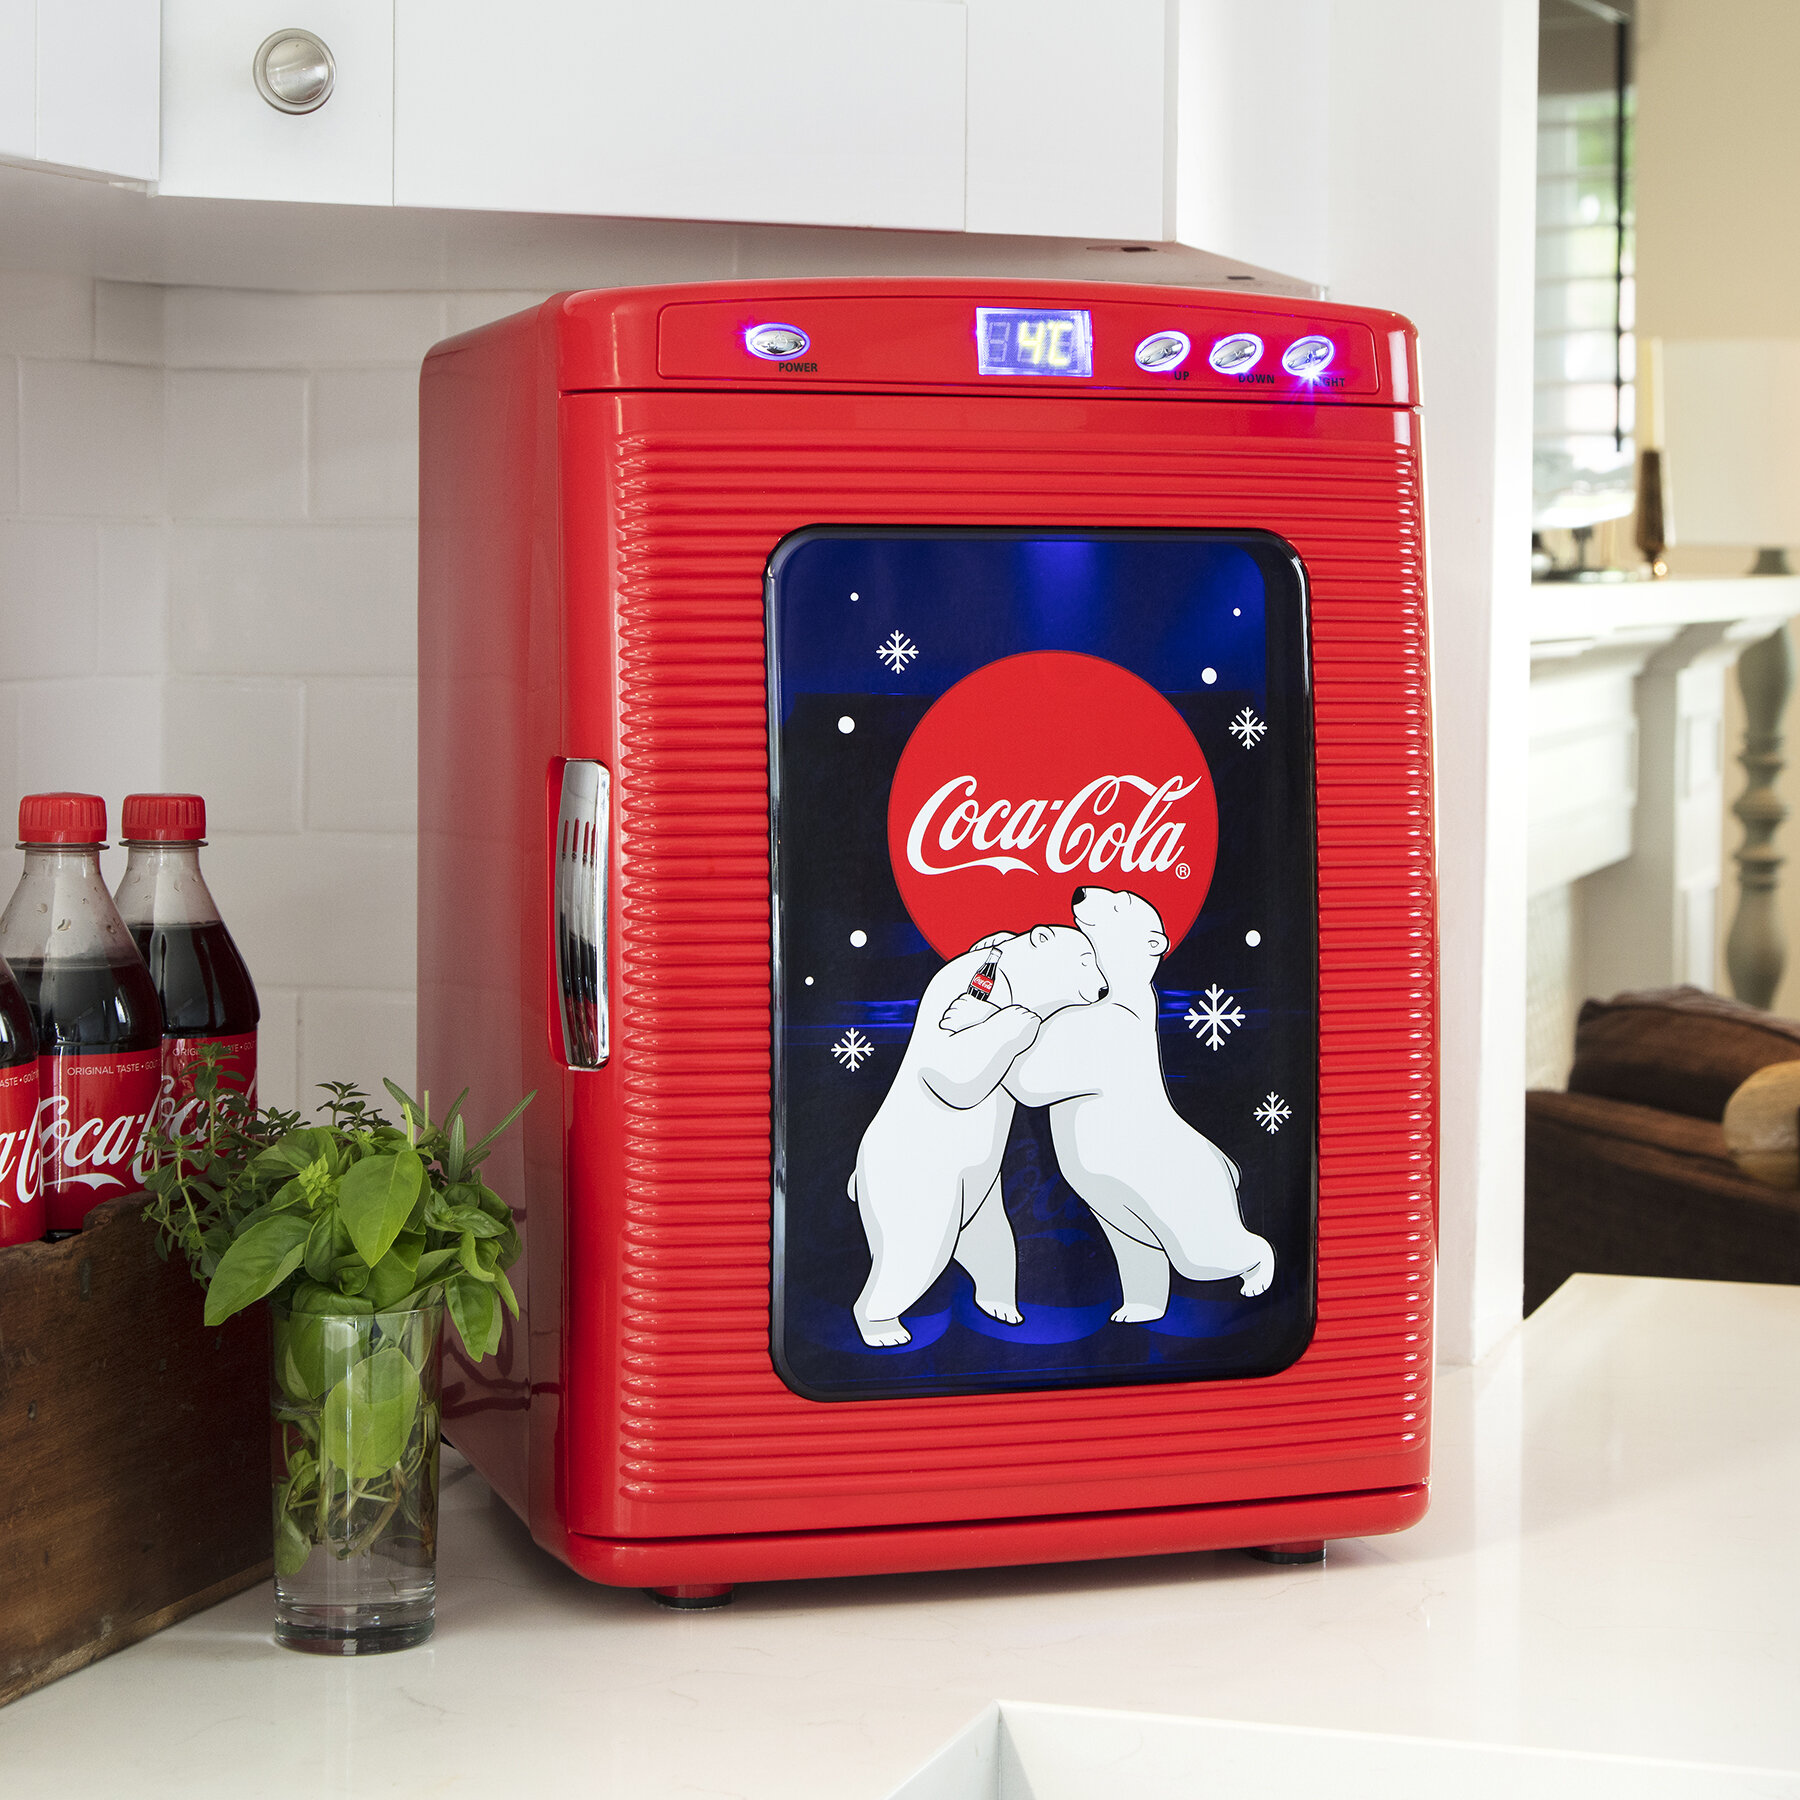 used coca cola refrigerator